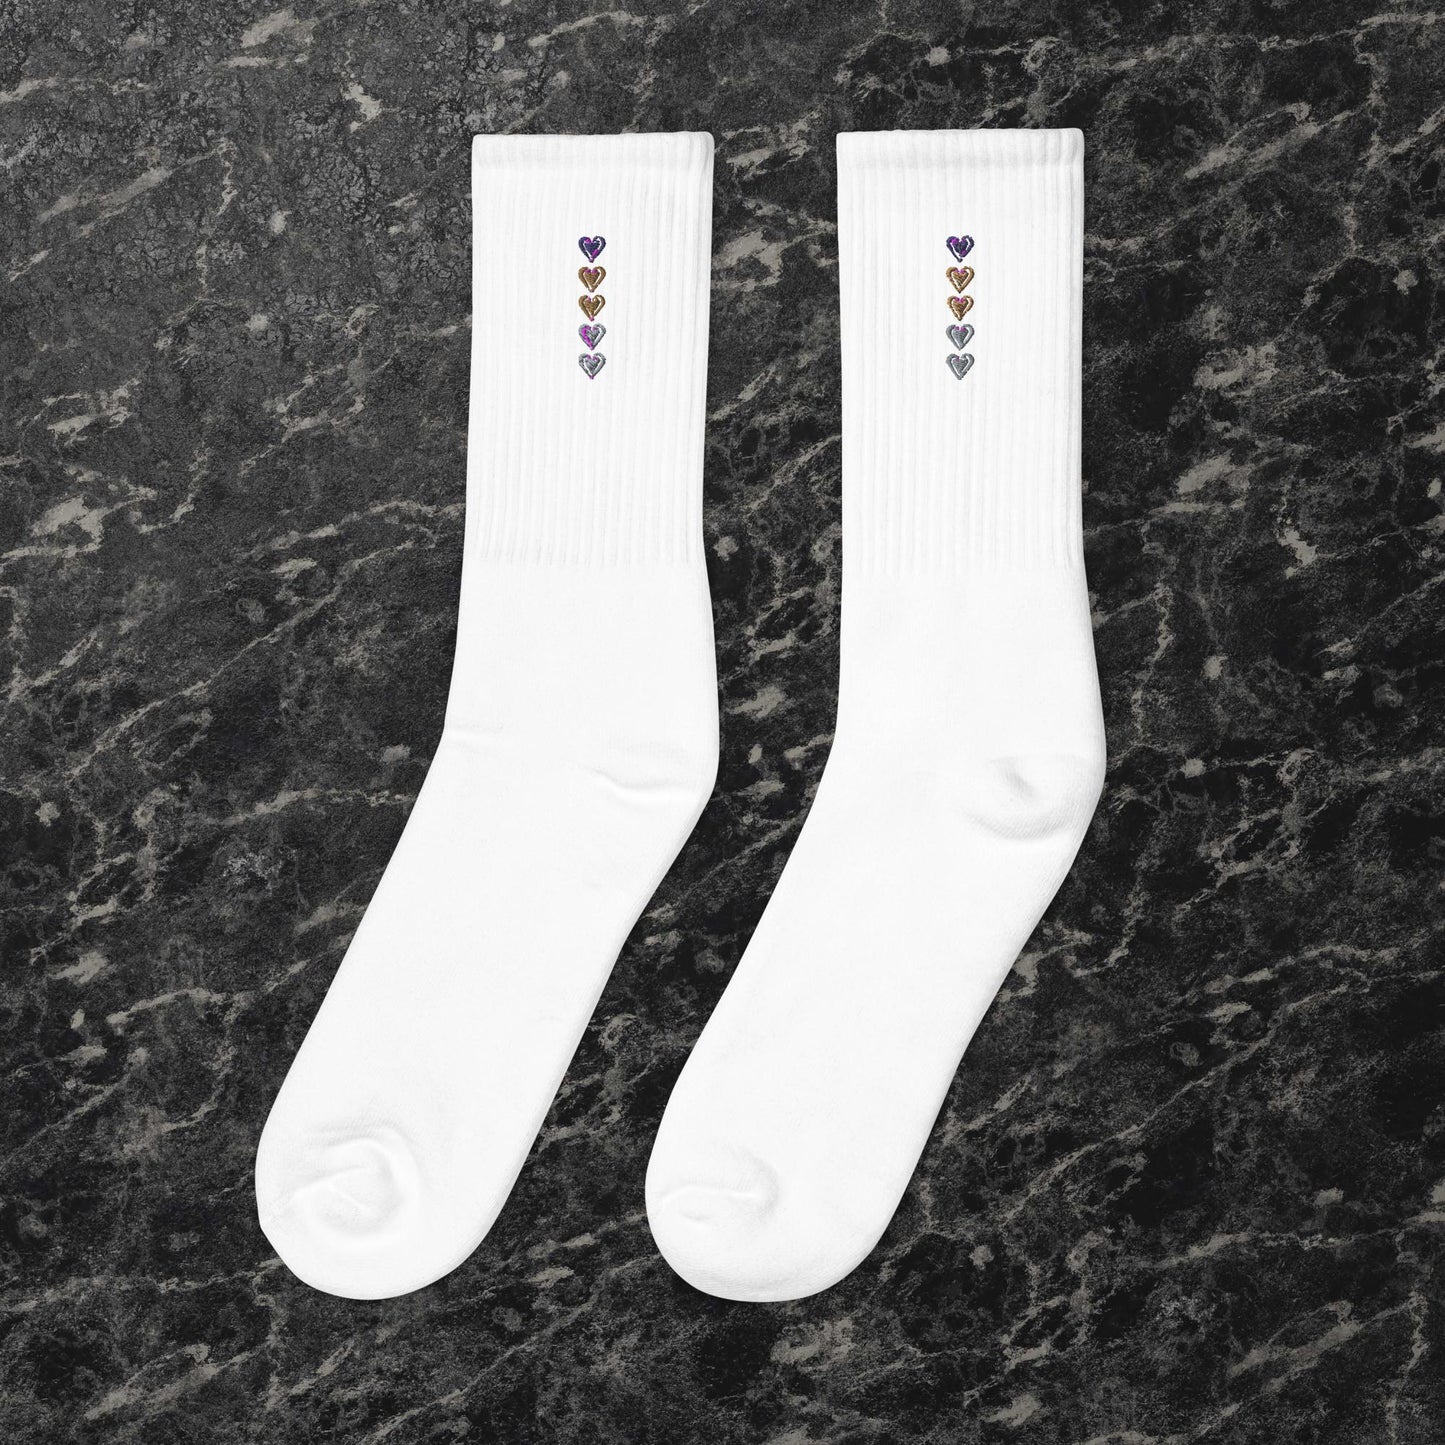 Embroidered socks